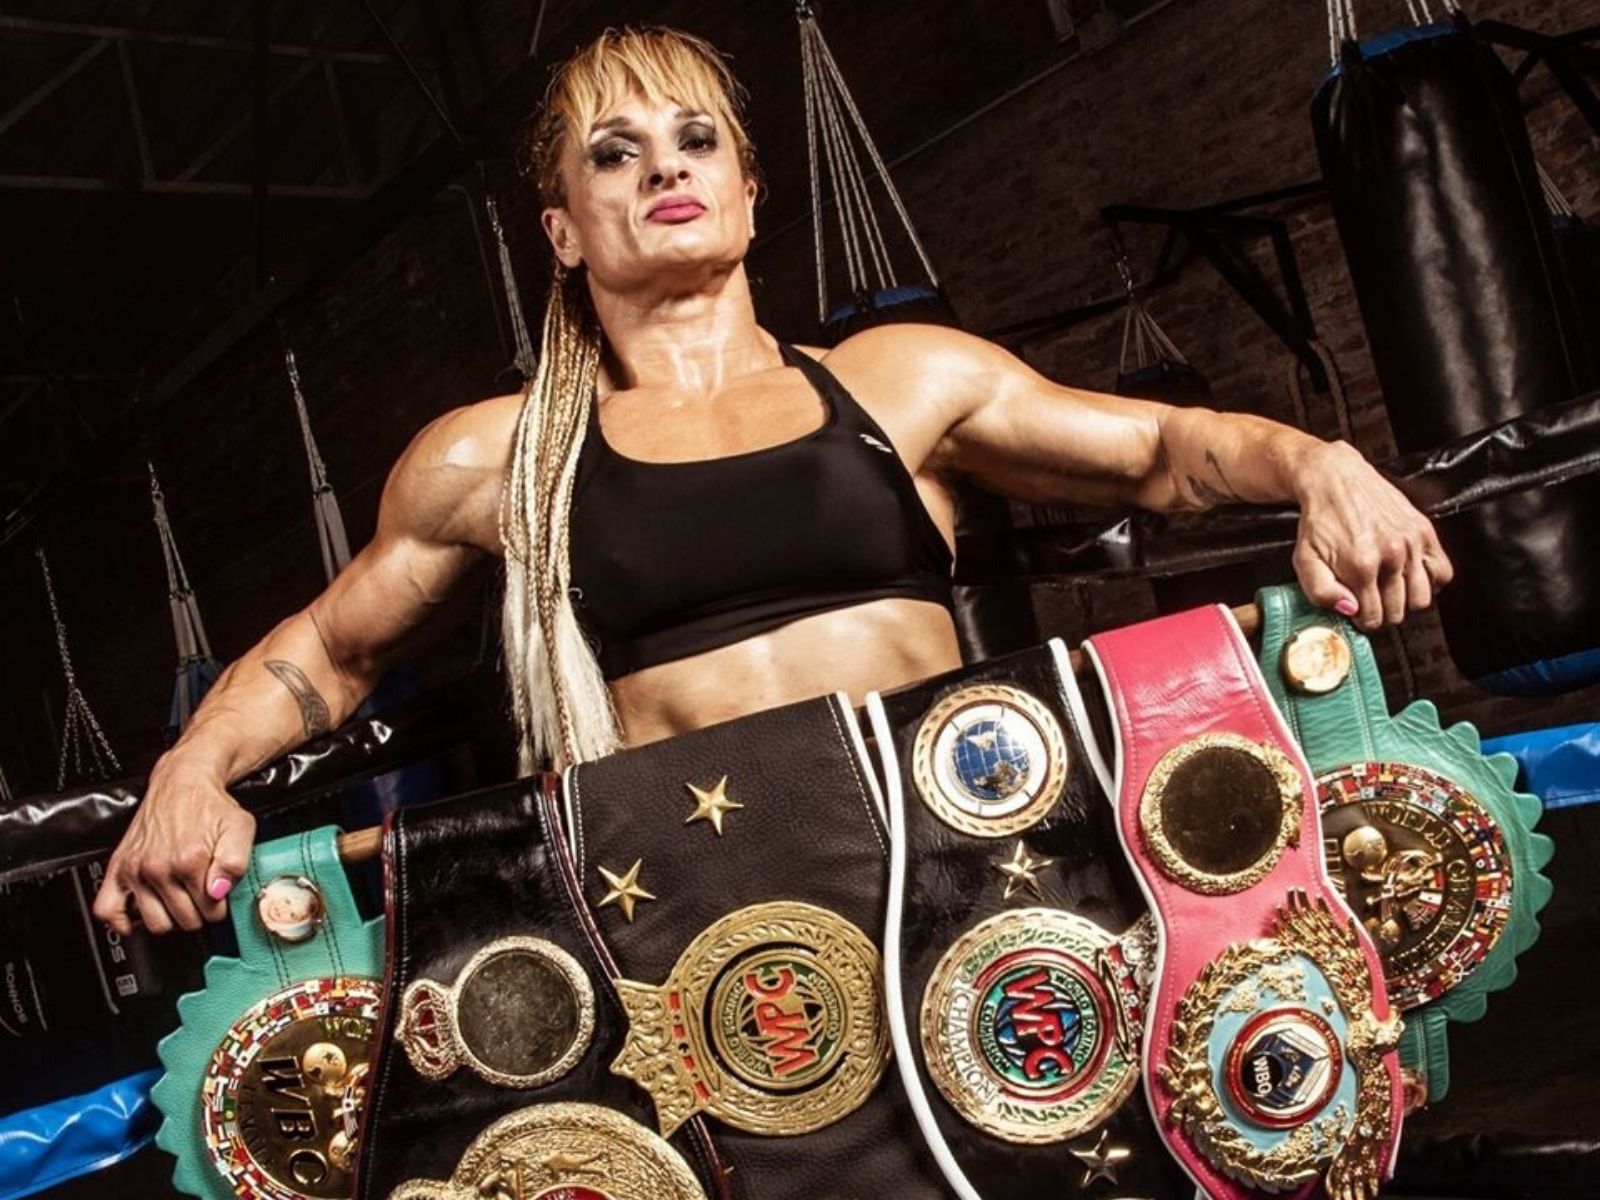 De los guantes a la política: La boxeadora Alejandra Oliveras será candidata a diputada nacional por Santa Fe